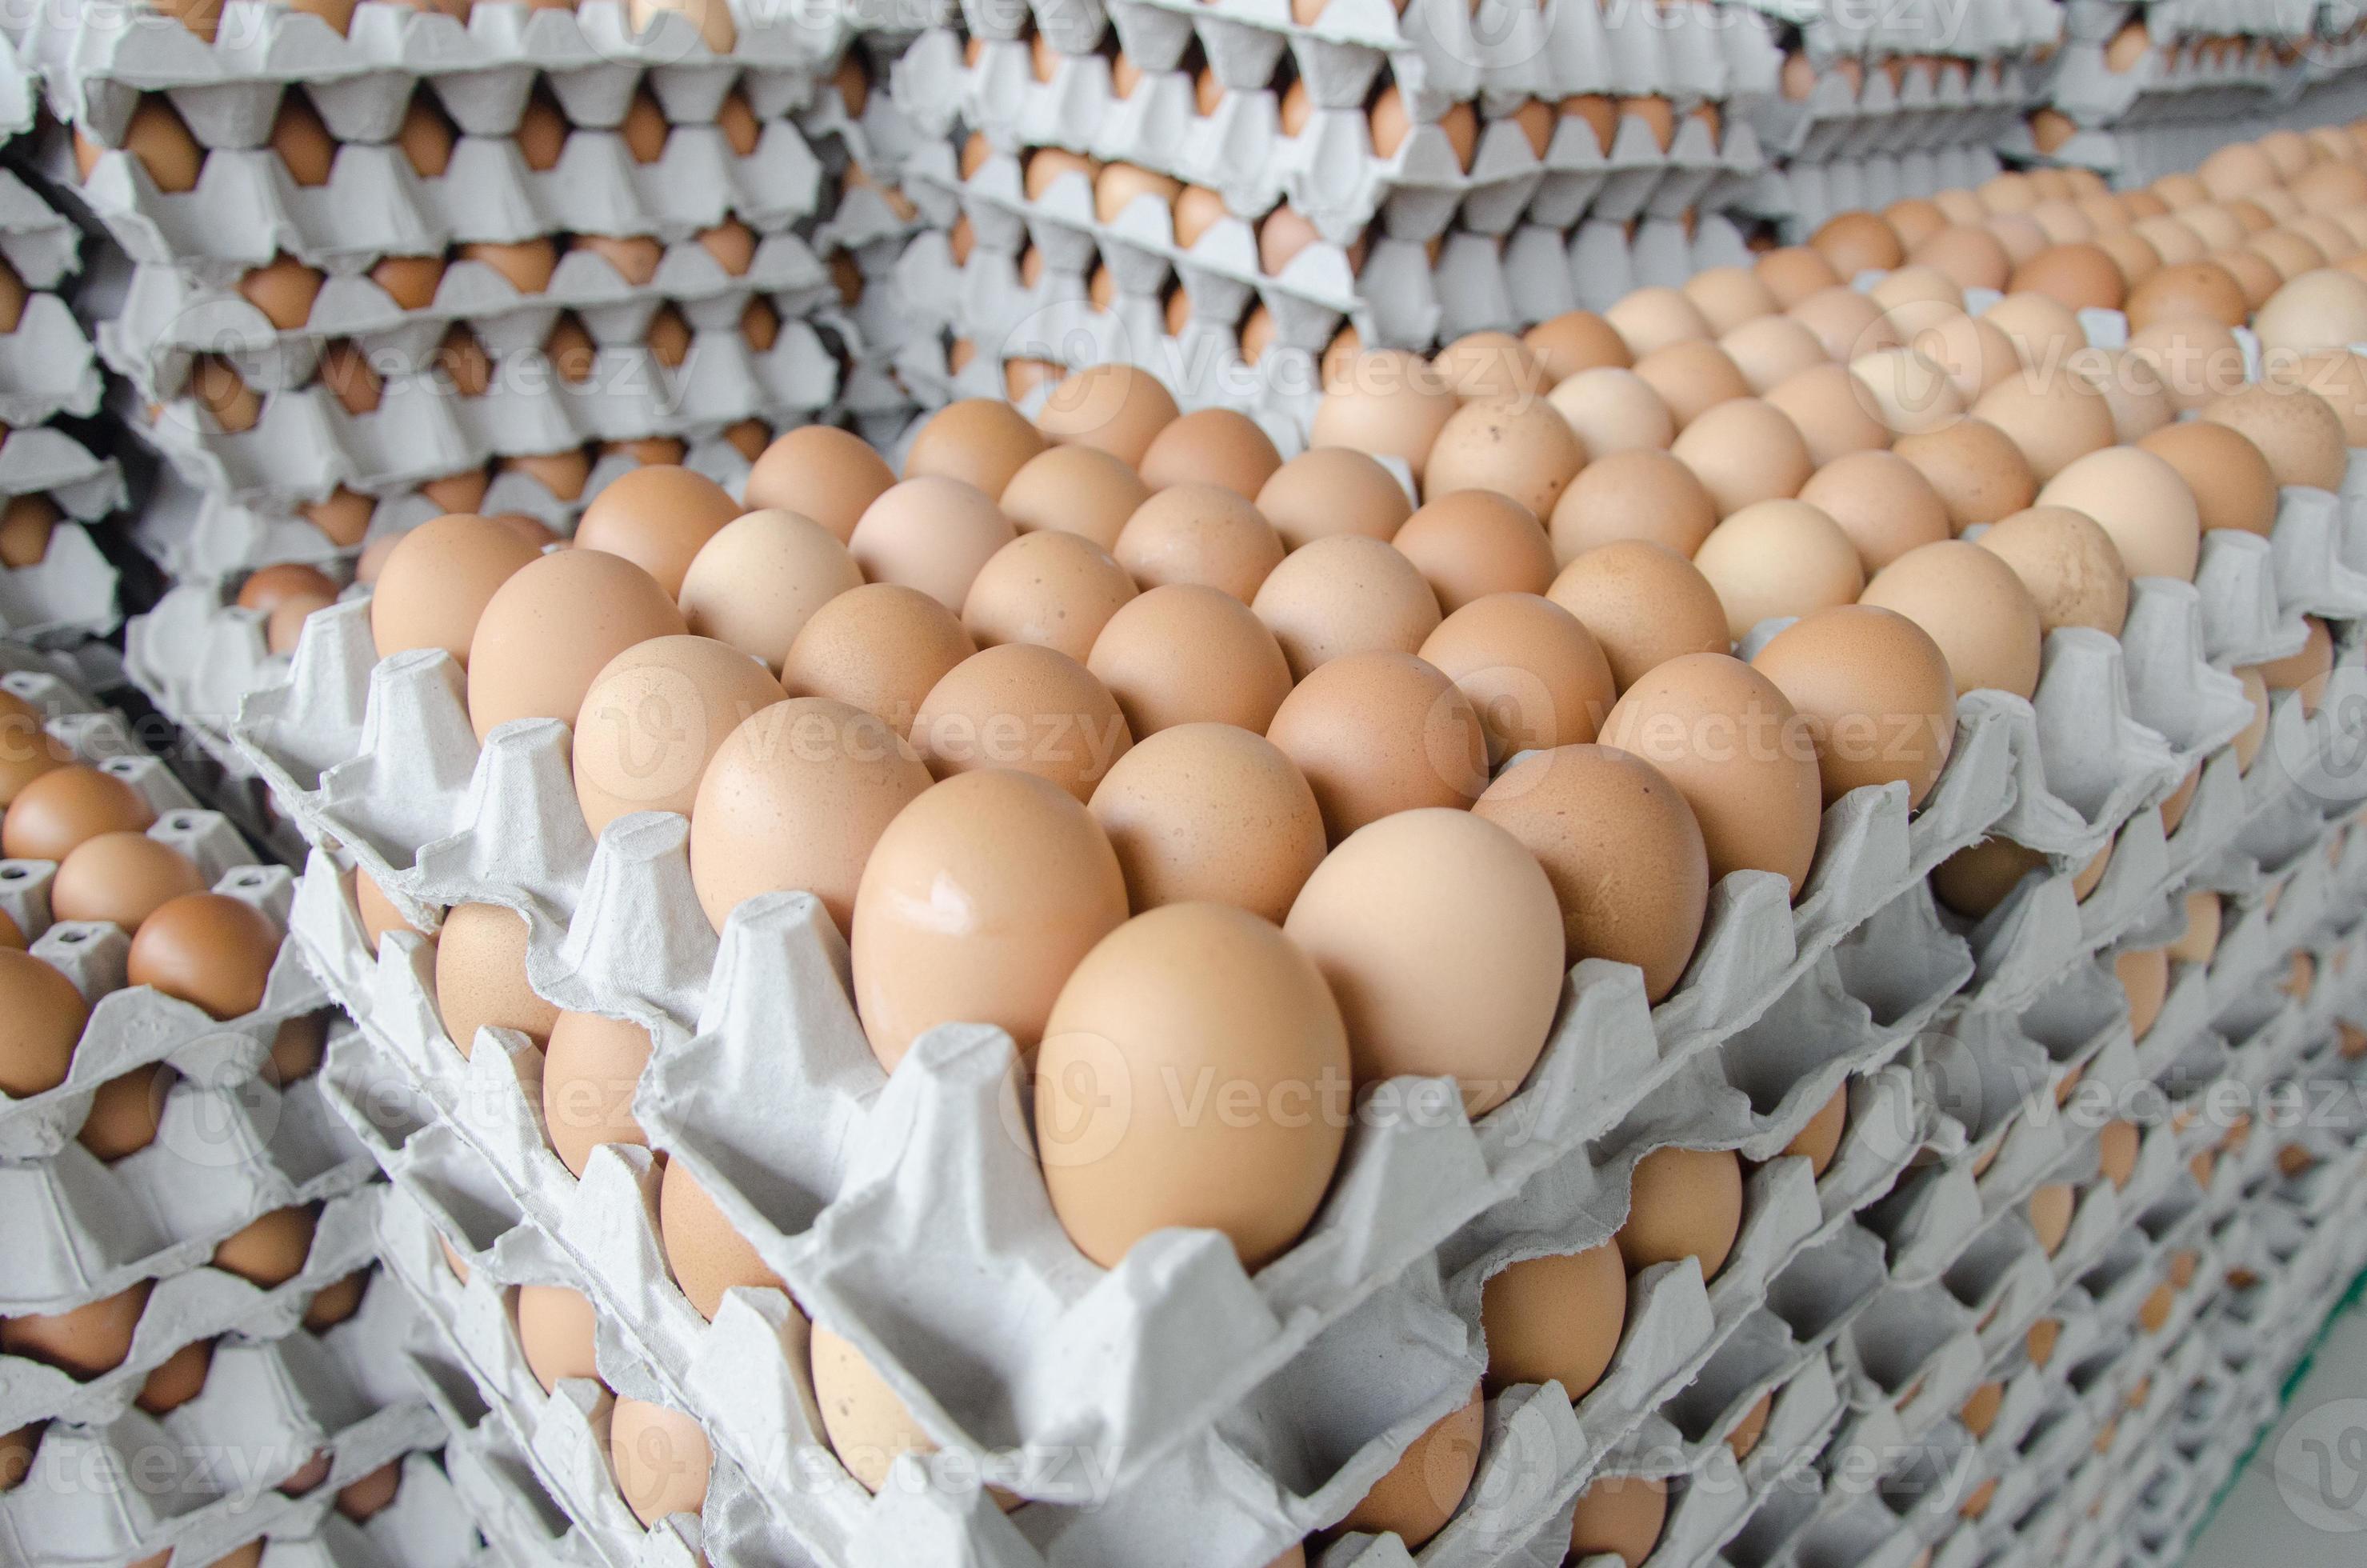 Contractie zwaarlijvigheid gesmolten eieren in de verpakking van grijs papier 848201 Stockfoto